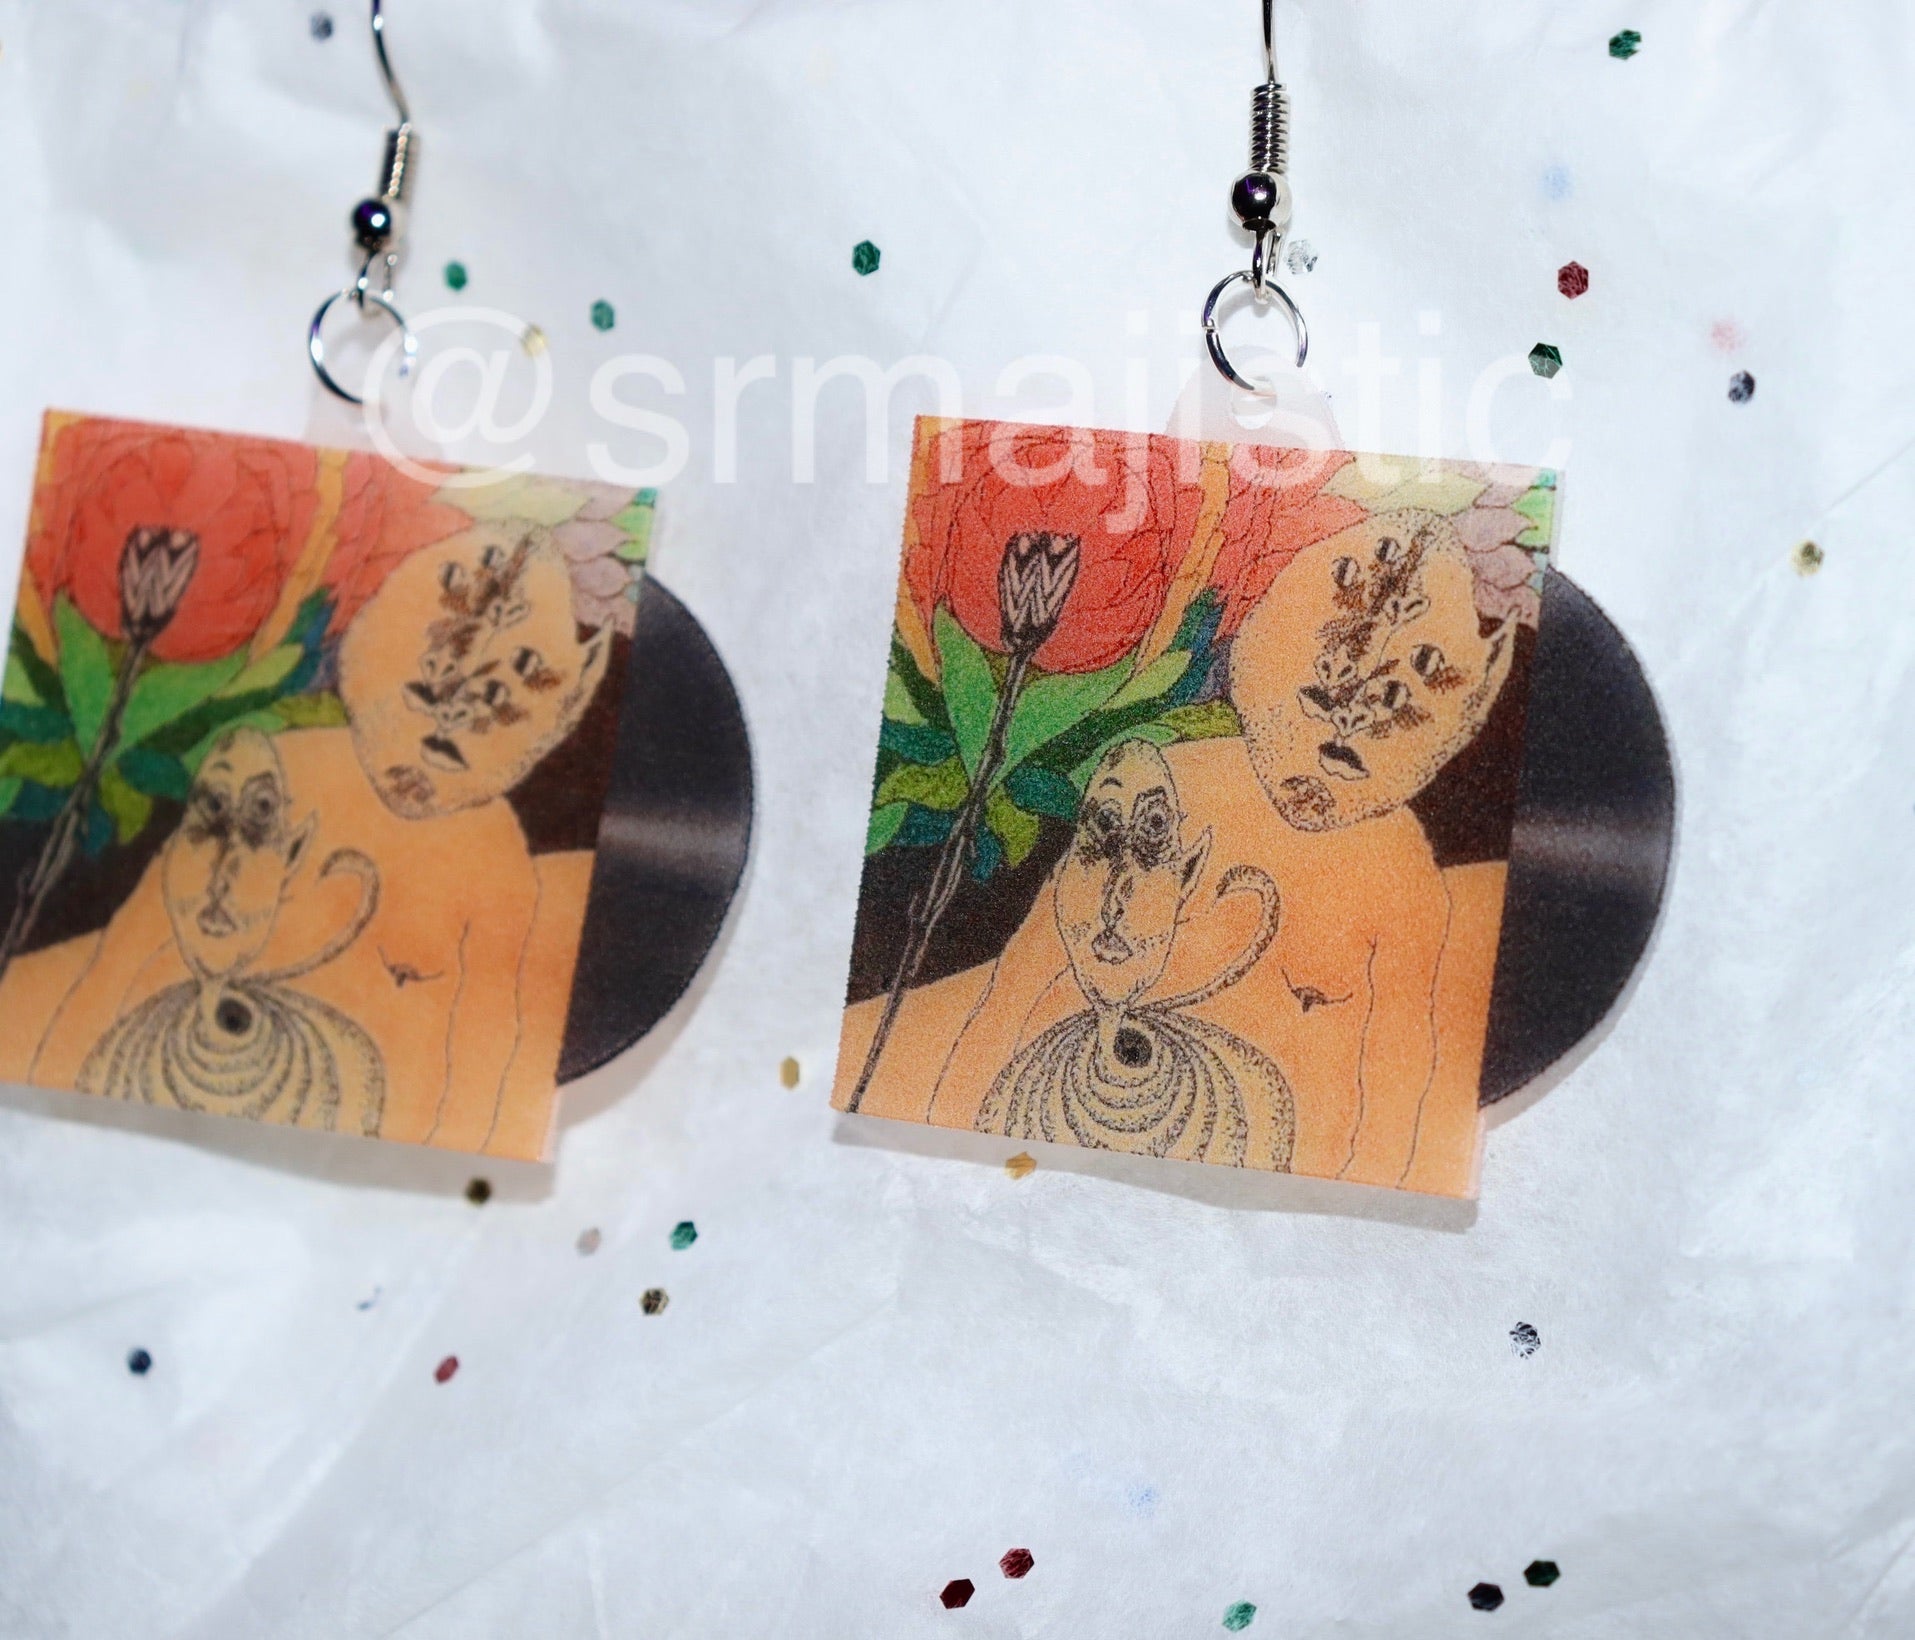 Still Woozy Cooks Vinyl Single Handmade Earrings!